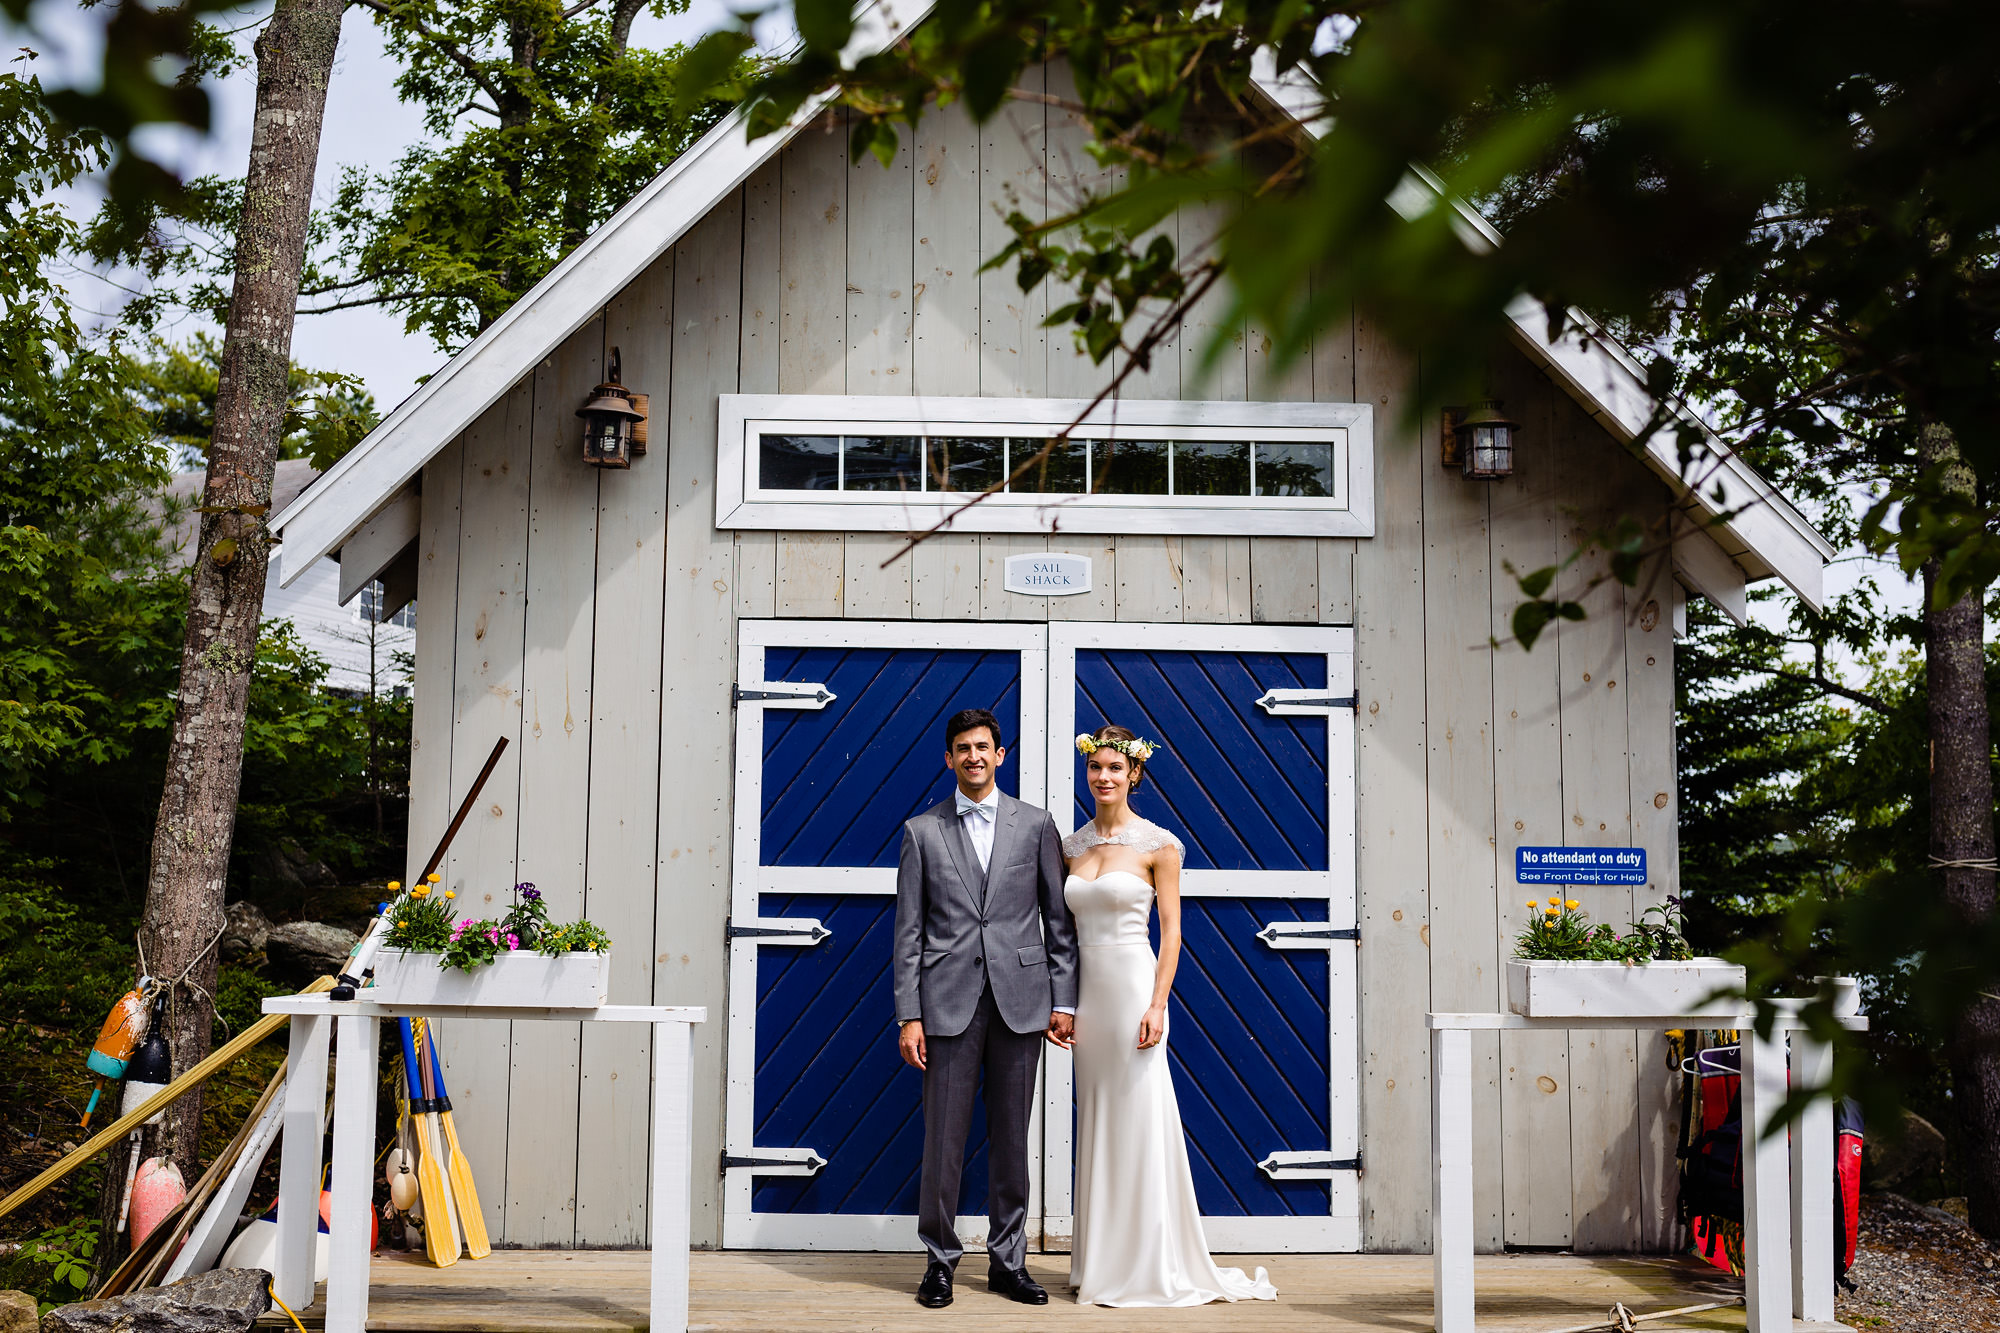 Wedding portraits at Linekin Bay Resort in Boothbay Harbor, Maine